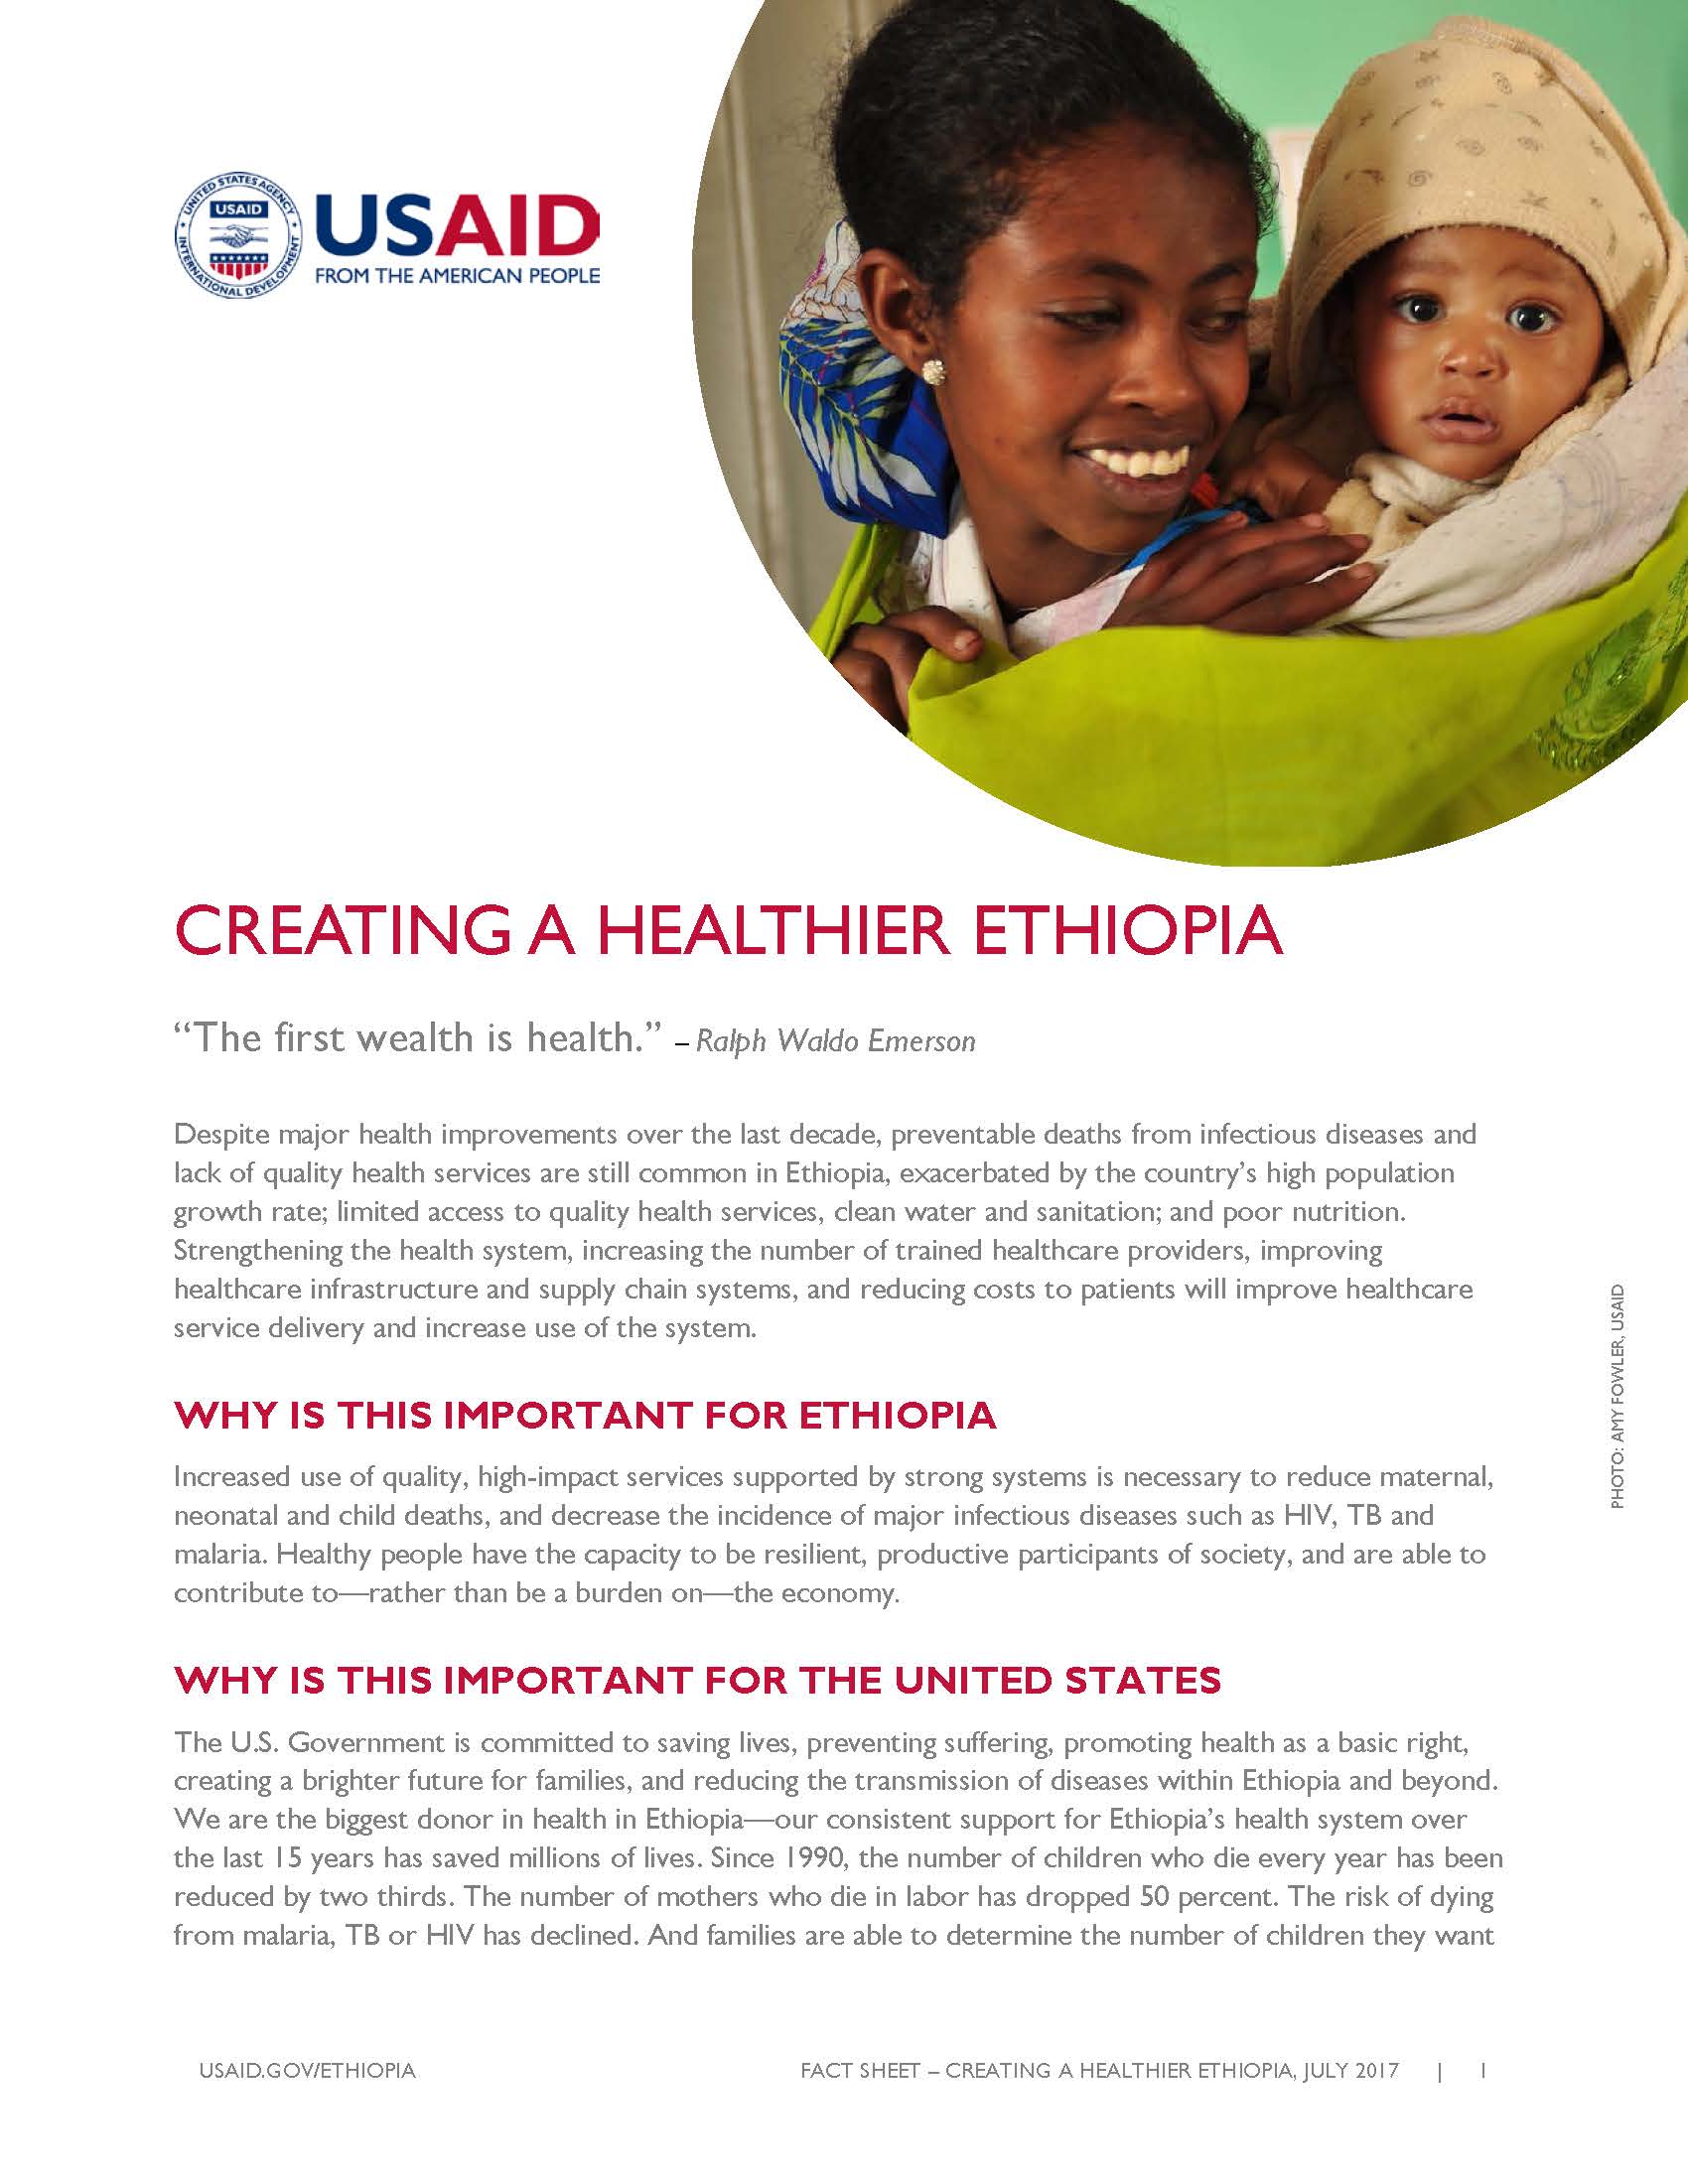 Ethiopia Fact Sheet Creating a Healthier Ethiopia July 2017